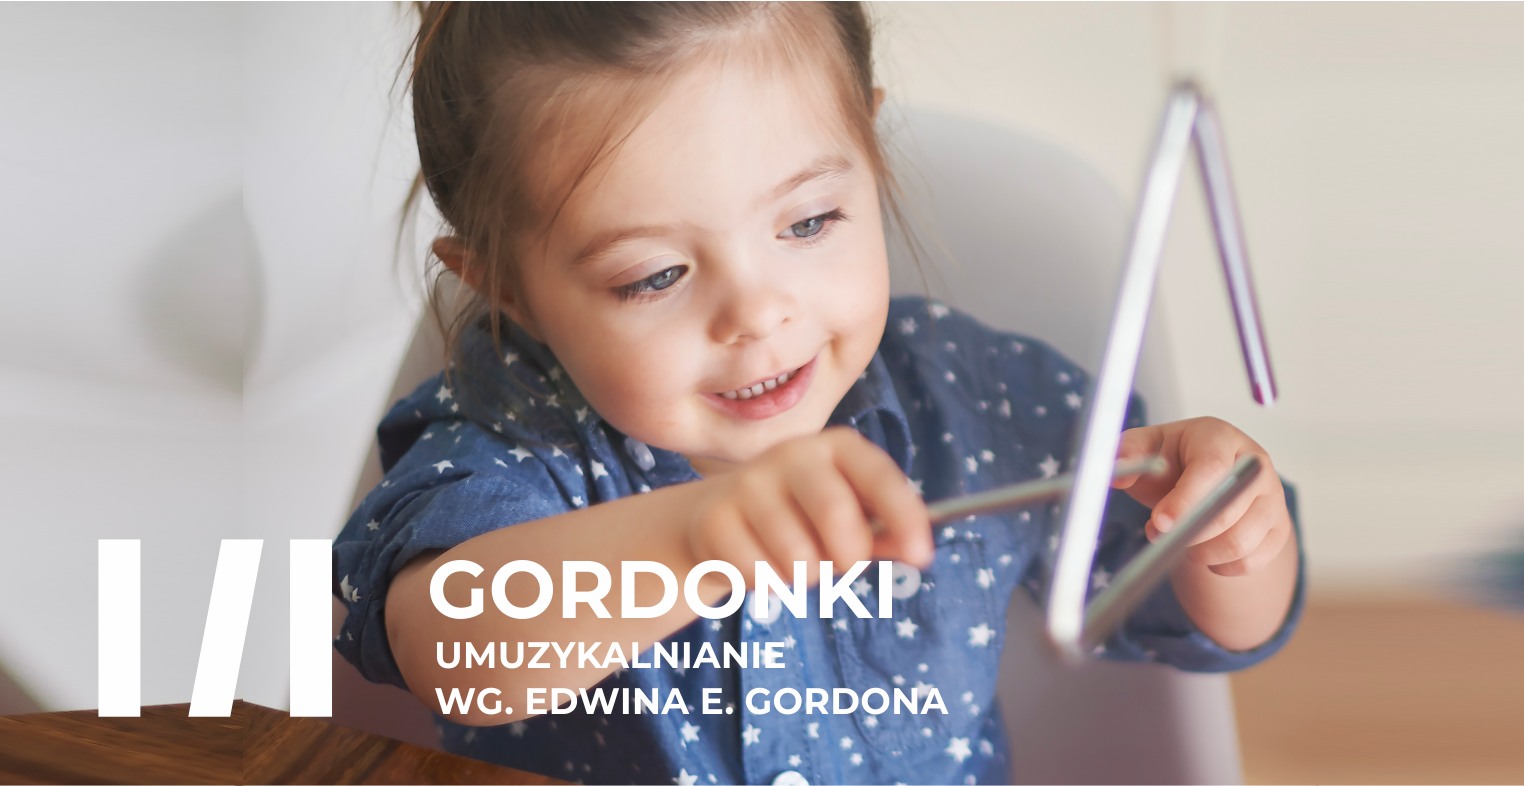 Gordonki – umuzykalnianie wg. Edwina E. Gordona